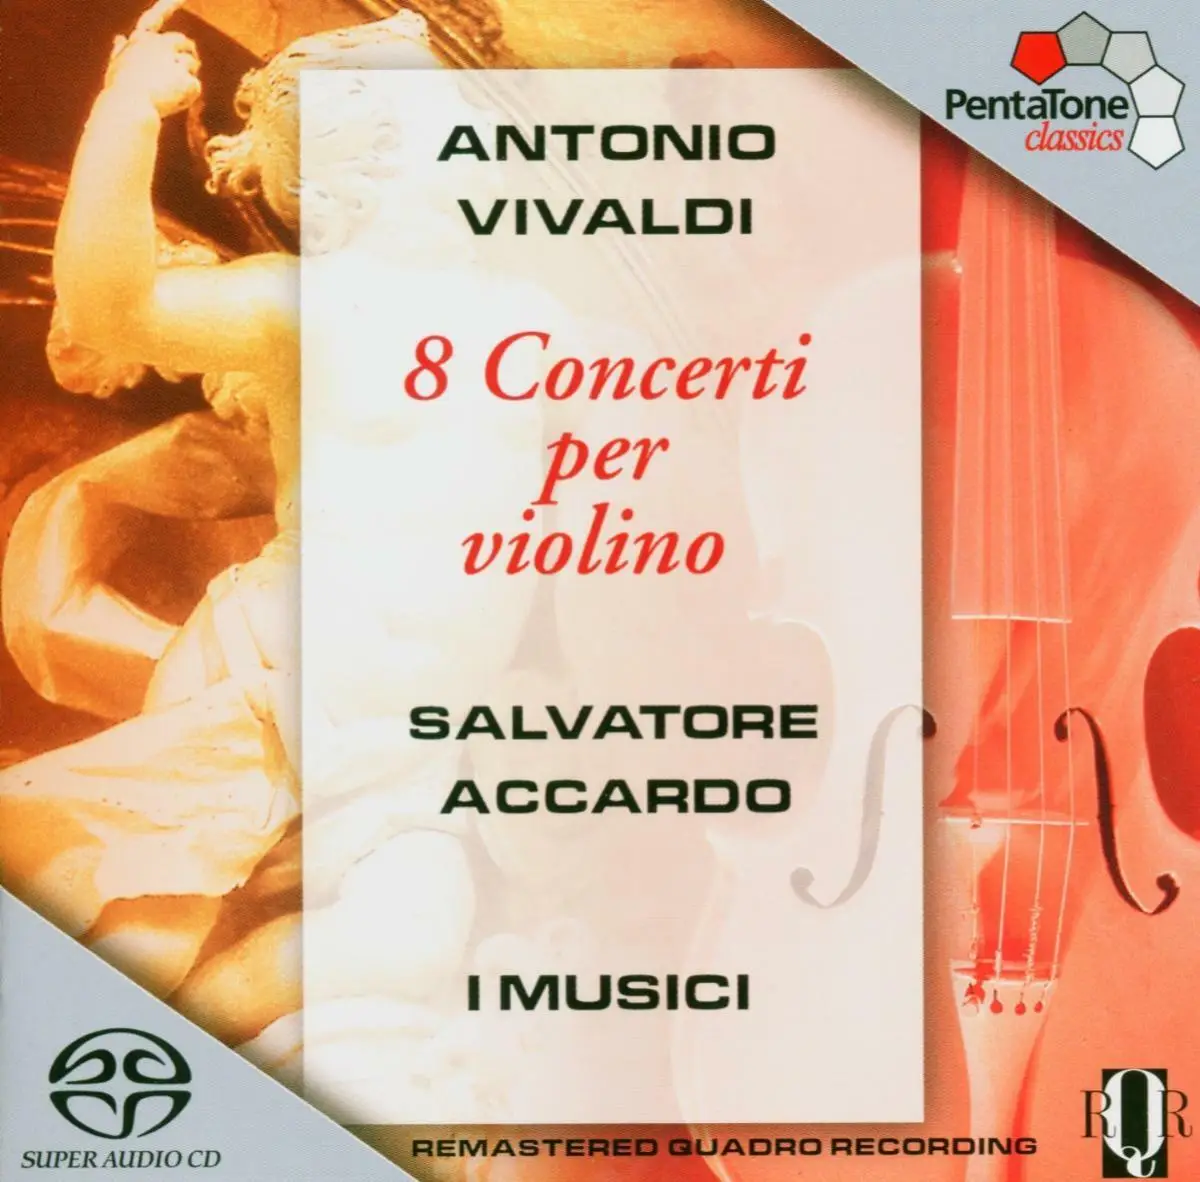 Вивальди 8. Vivaldi Concertos op.8 i Musici. Antonio Vivaldi Concerti per Violino пластинка фото. Вивальди 415. Louis Spohr - complete Violin Concertos.